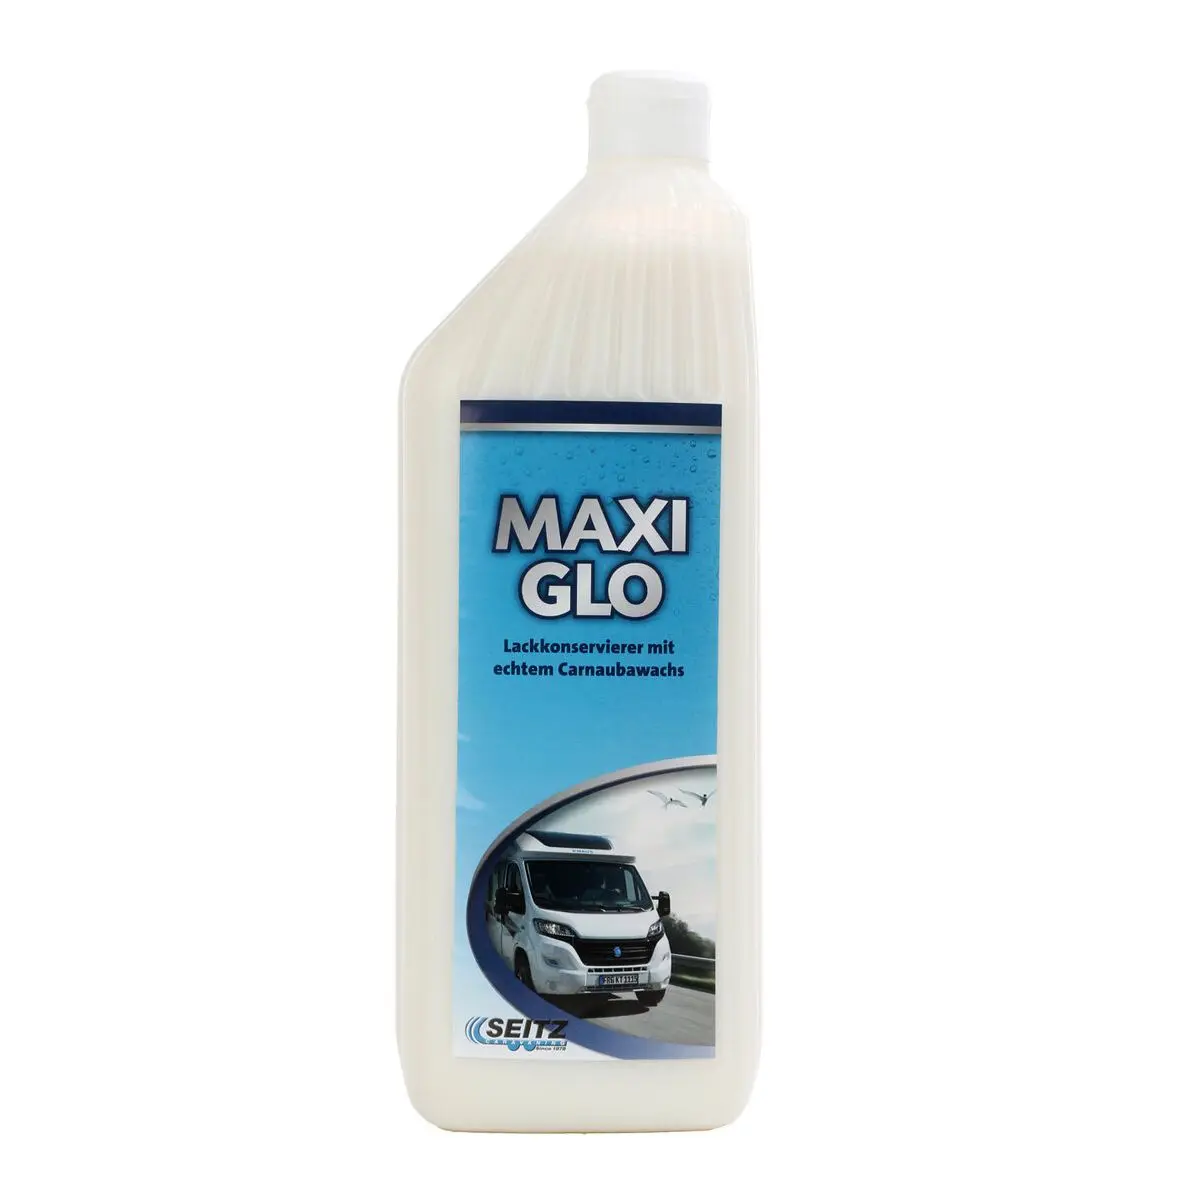 Festékvédő Maxi-Glo - 1000 ml